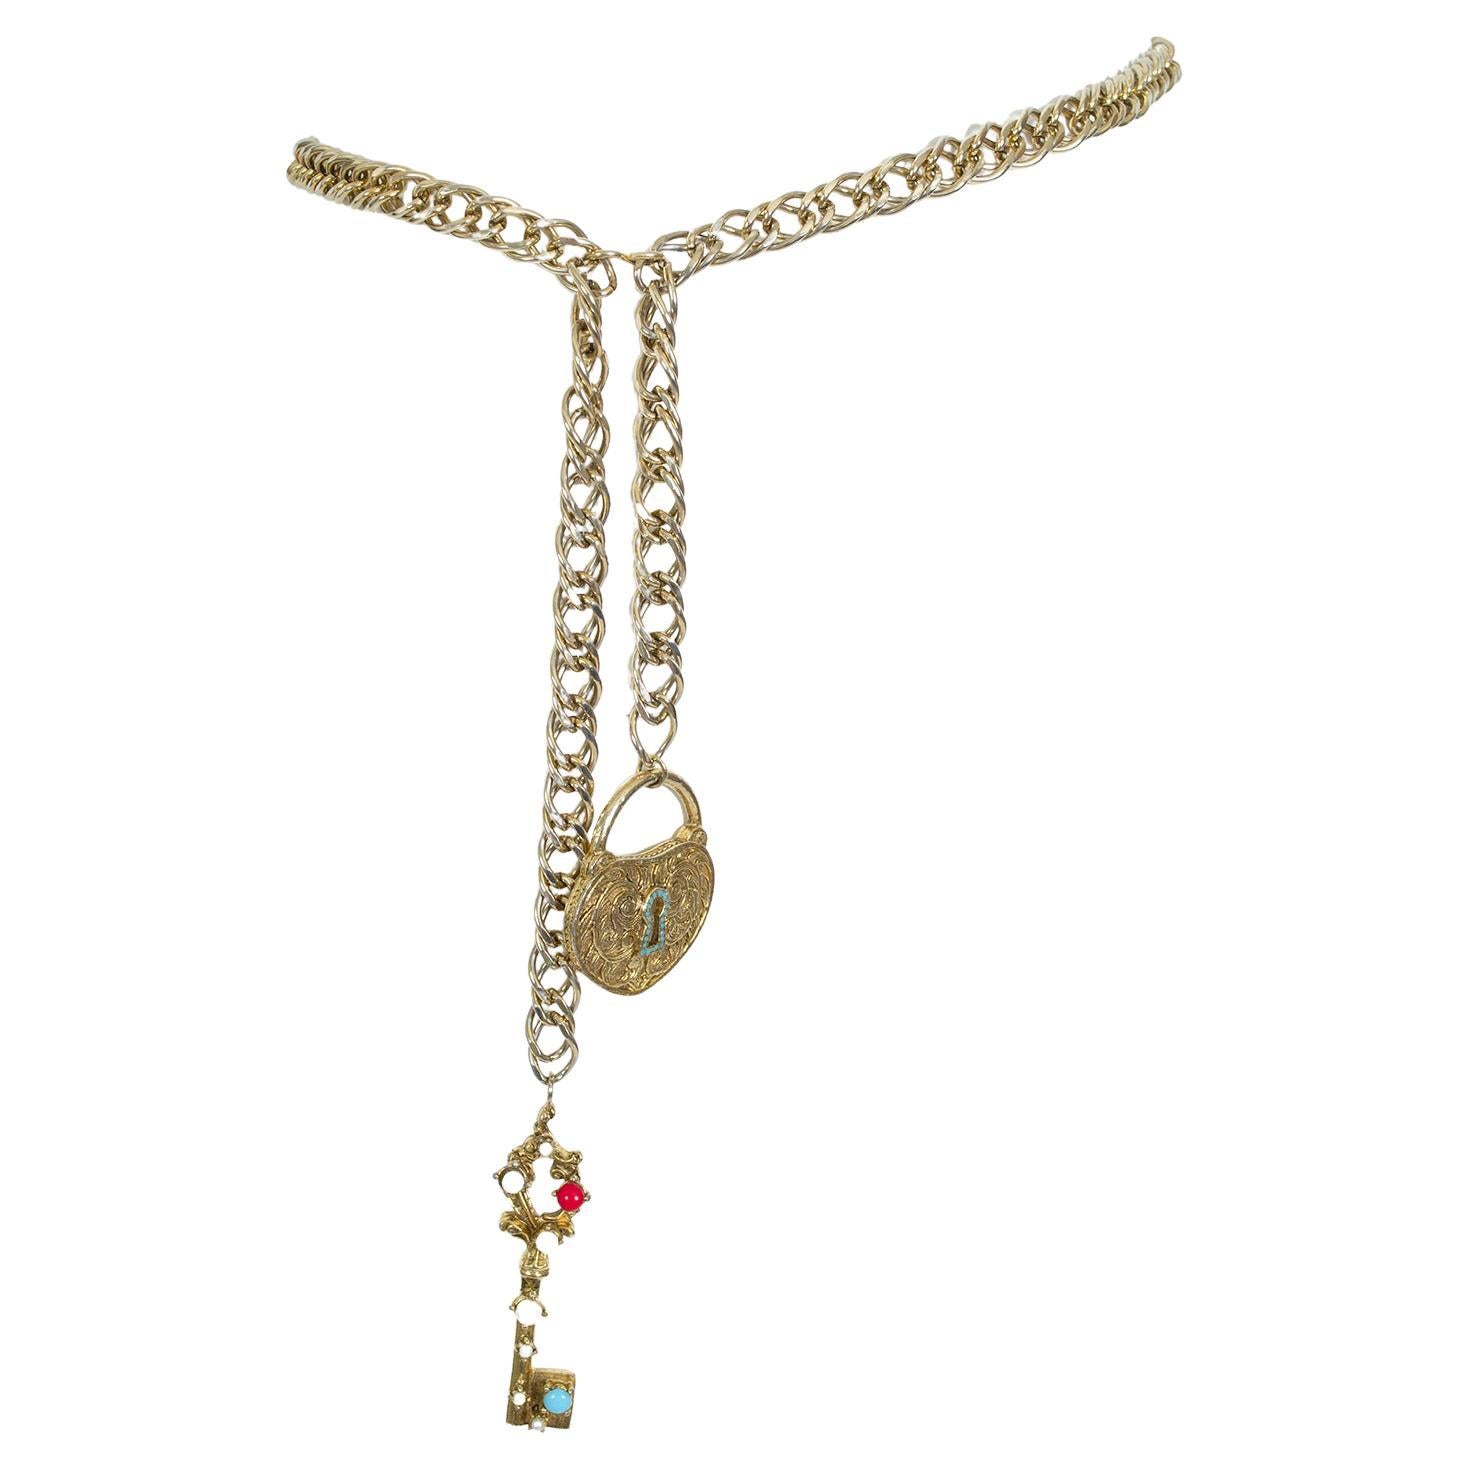 Authentic Vintage Chanel belt necklace CC logo 2.55 flap bag heart